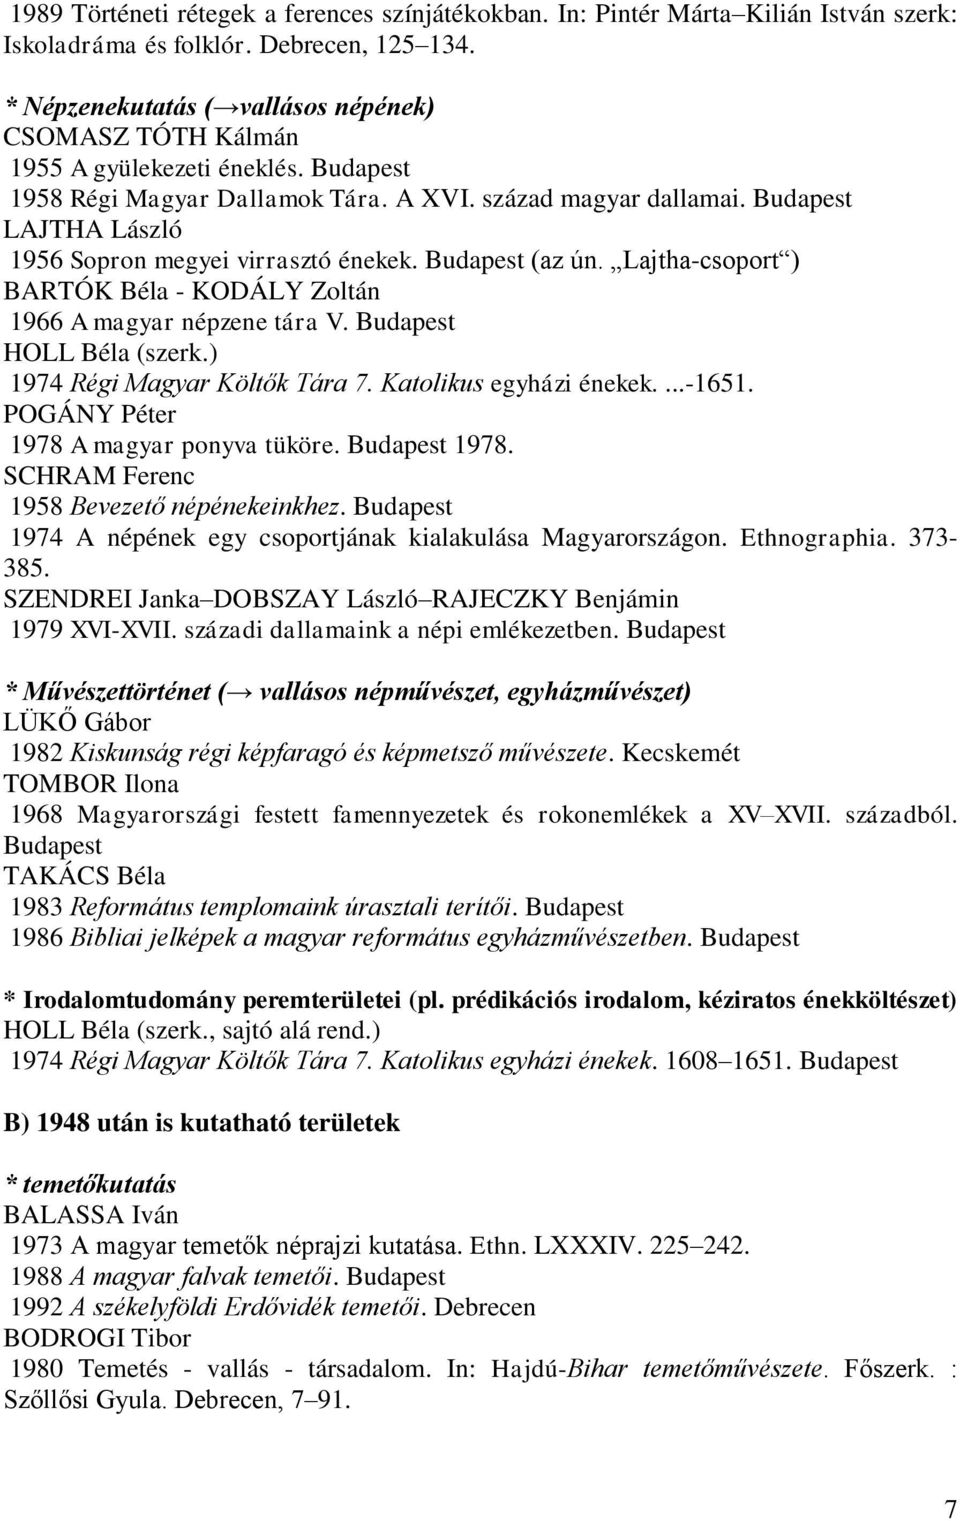 A magyar vallási néprajz tudománytörténete (vázlat, könyvészeti adatok) -  PDF Ingyenes letöltés